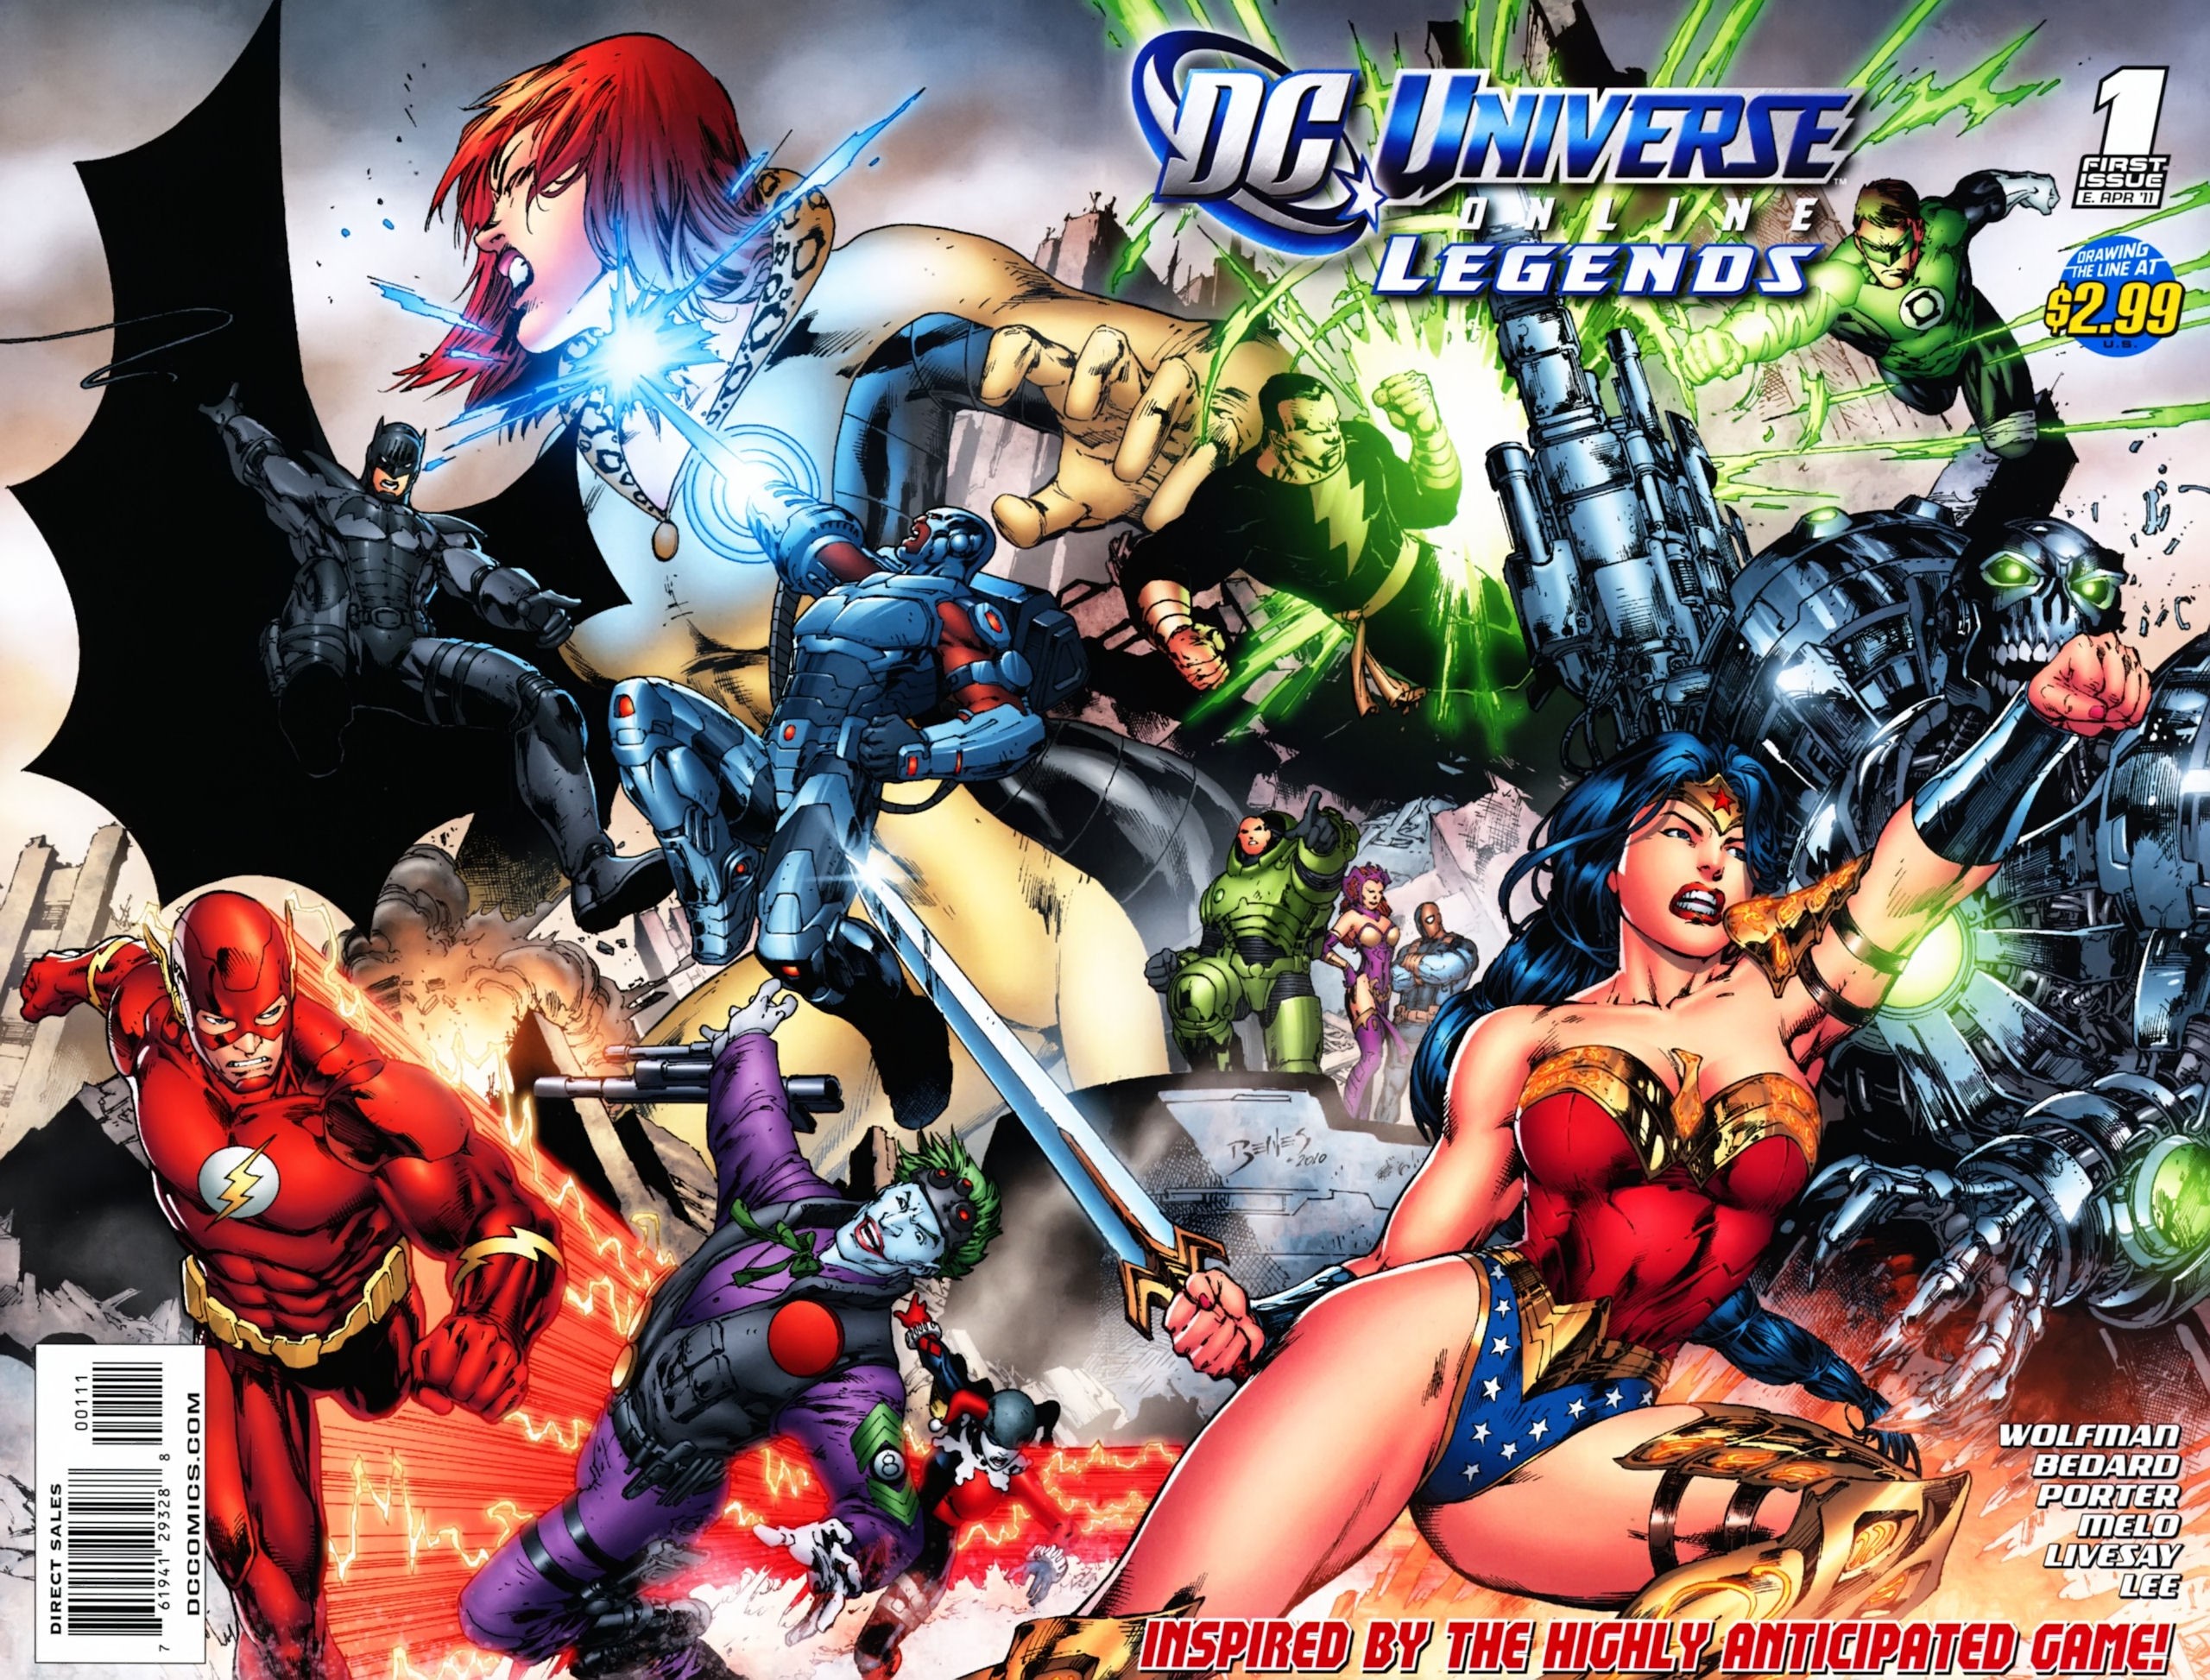 DC Universe Online Legends Vol. 1 #1